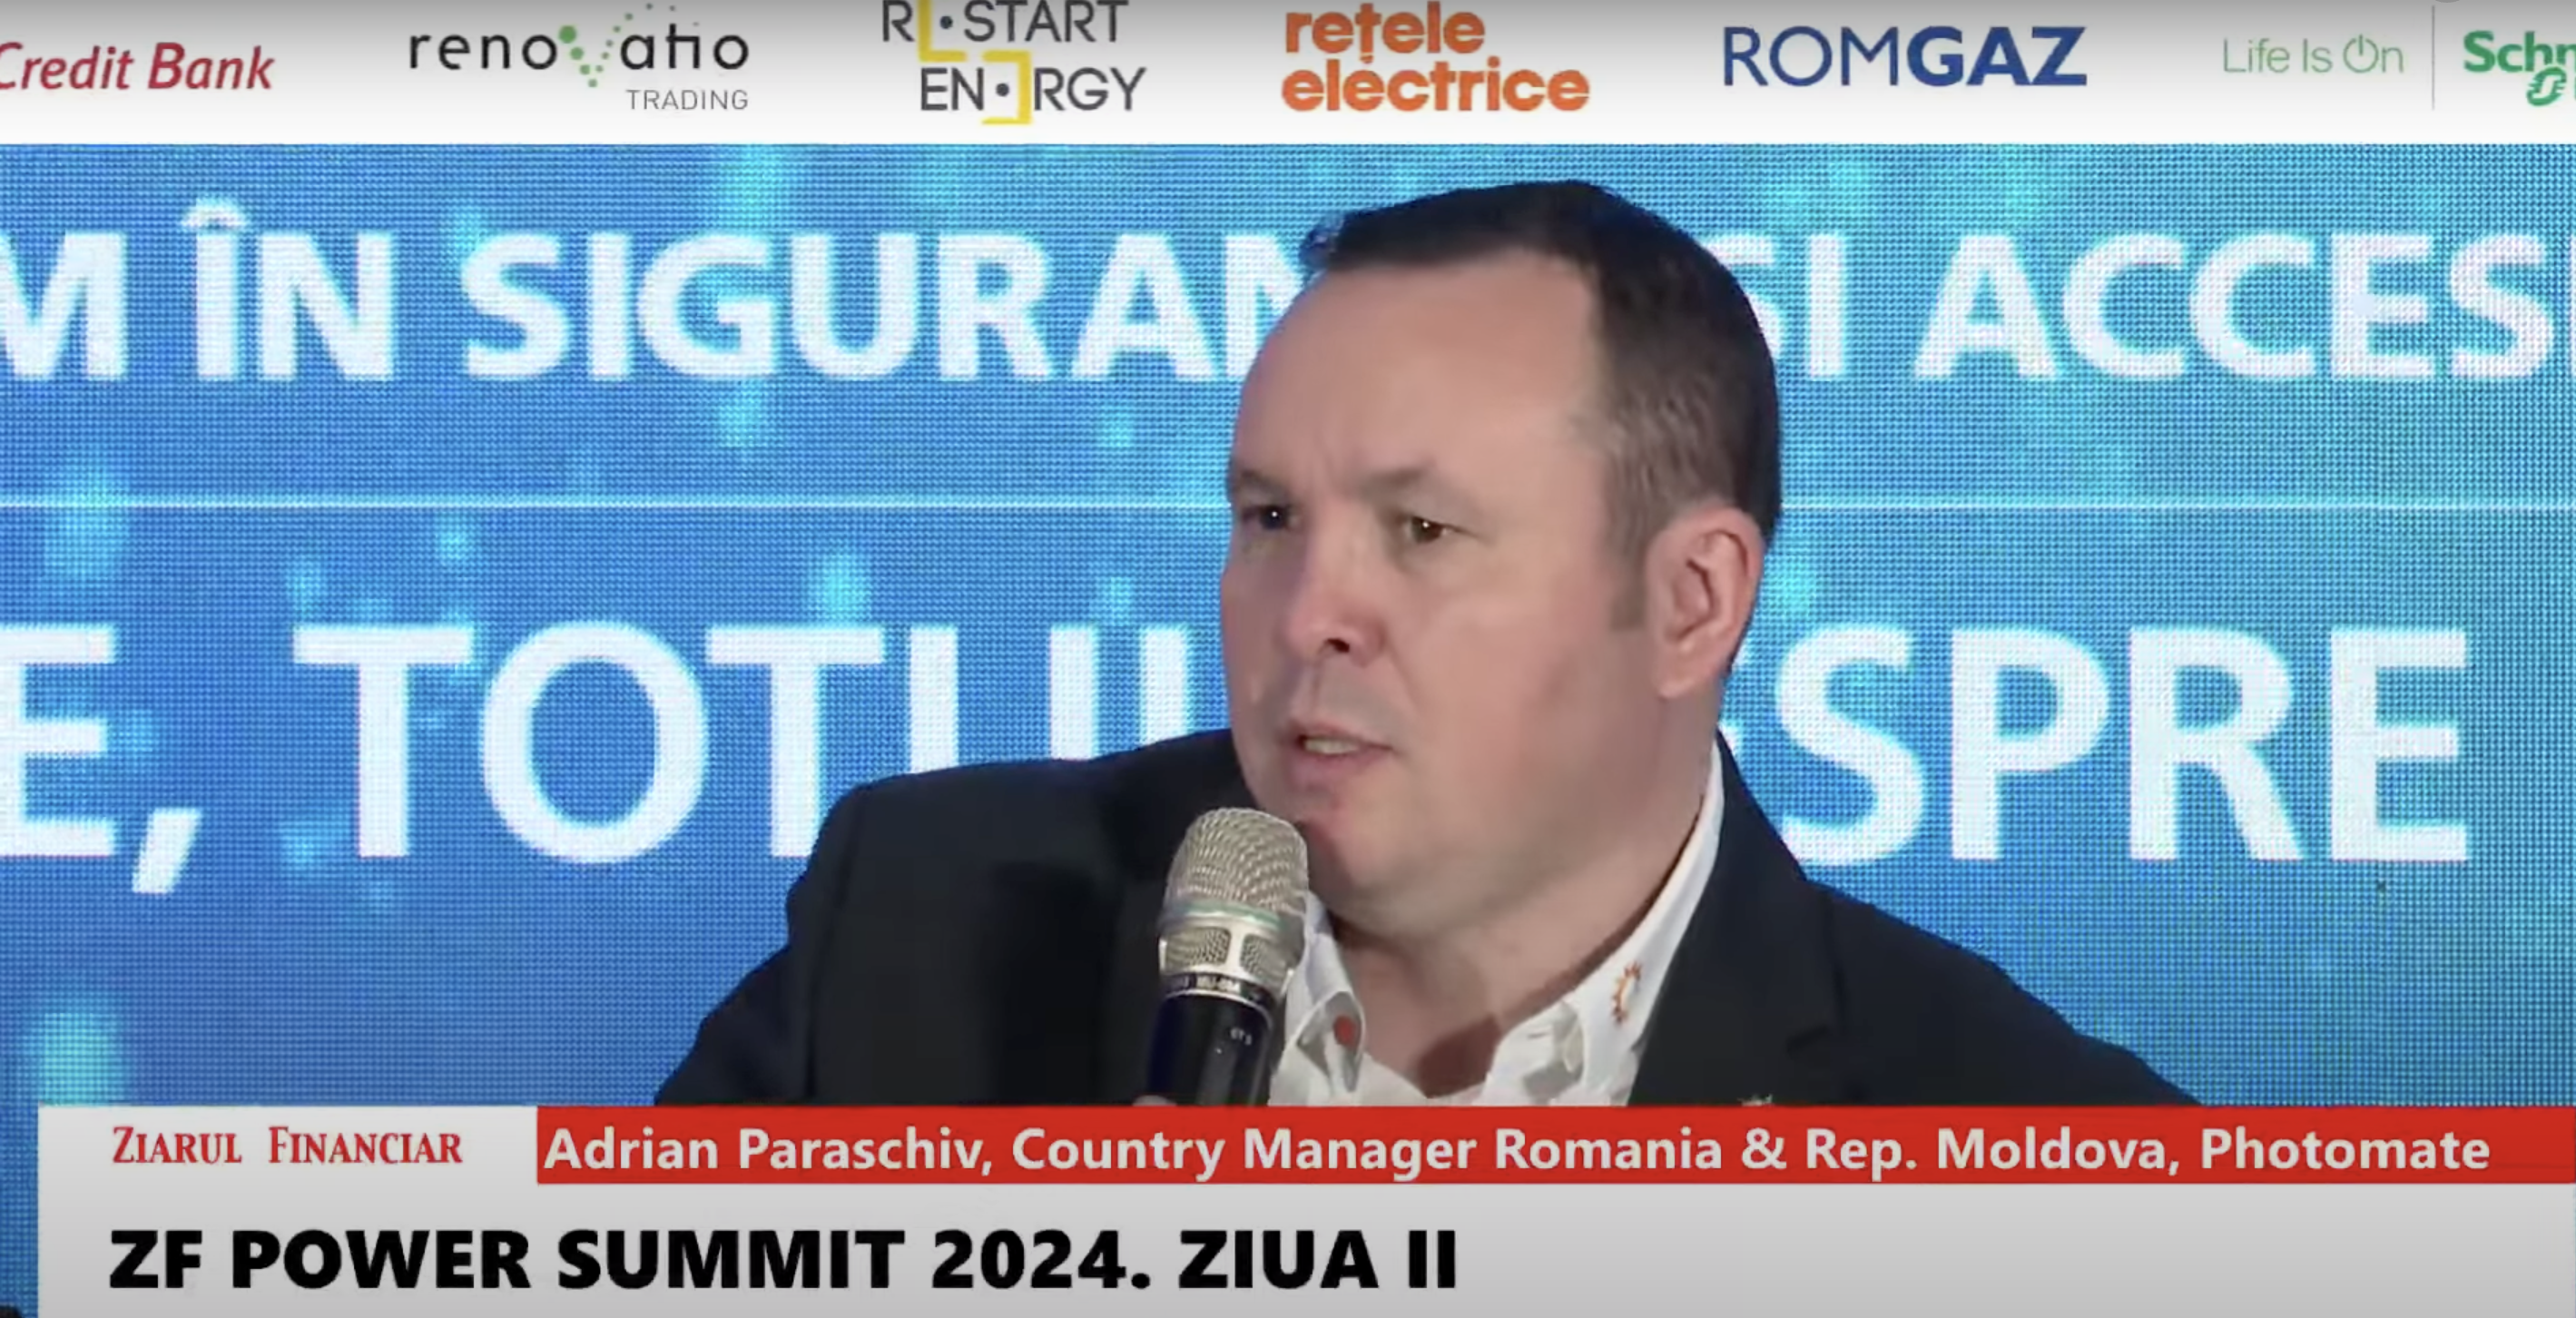 Adrian Paraschiv, Photomate: Piaţa energiei din România este în curs de maturizare, avem provocări în ceea ce priveşte echilibrarea reţelelor, sistemele de stocare şi integrarea lor în reţelele de transport